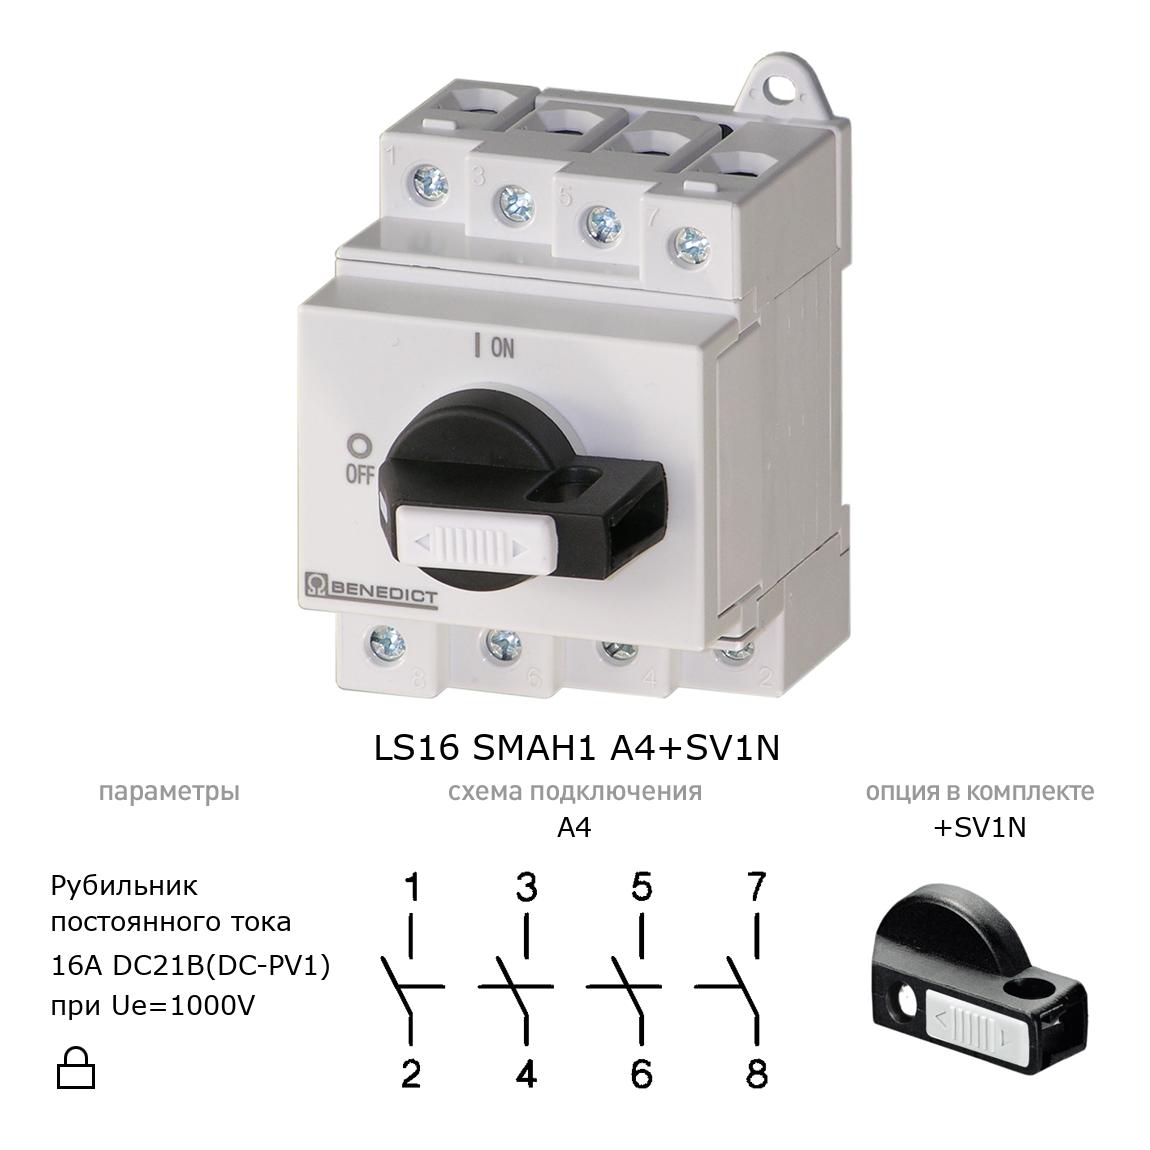 Выключатель нагрузки / рубильник для постоянного тока (DC) LS16 SMAH1 A4+SV1N BENEDICT